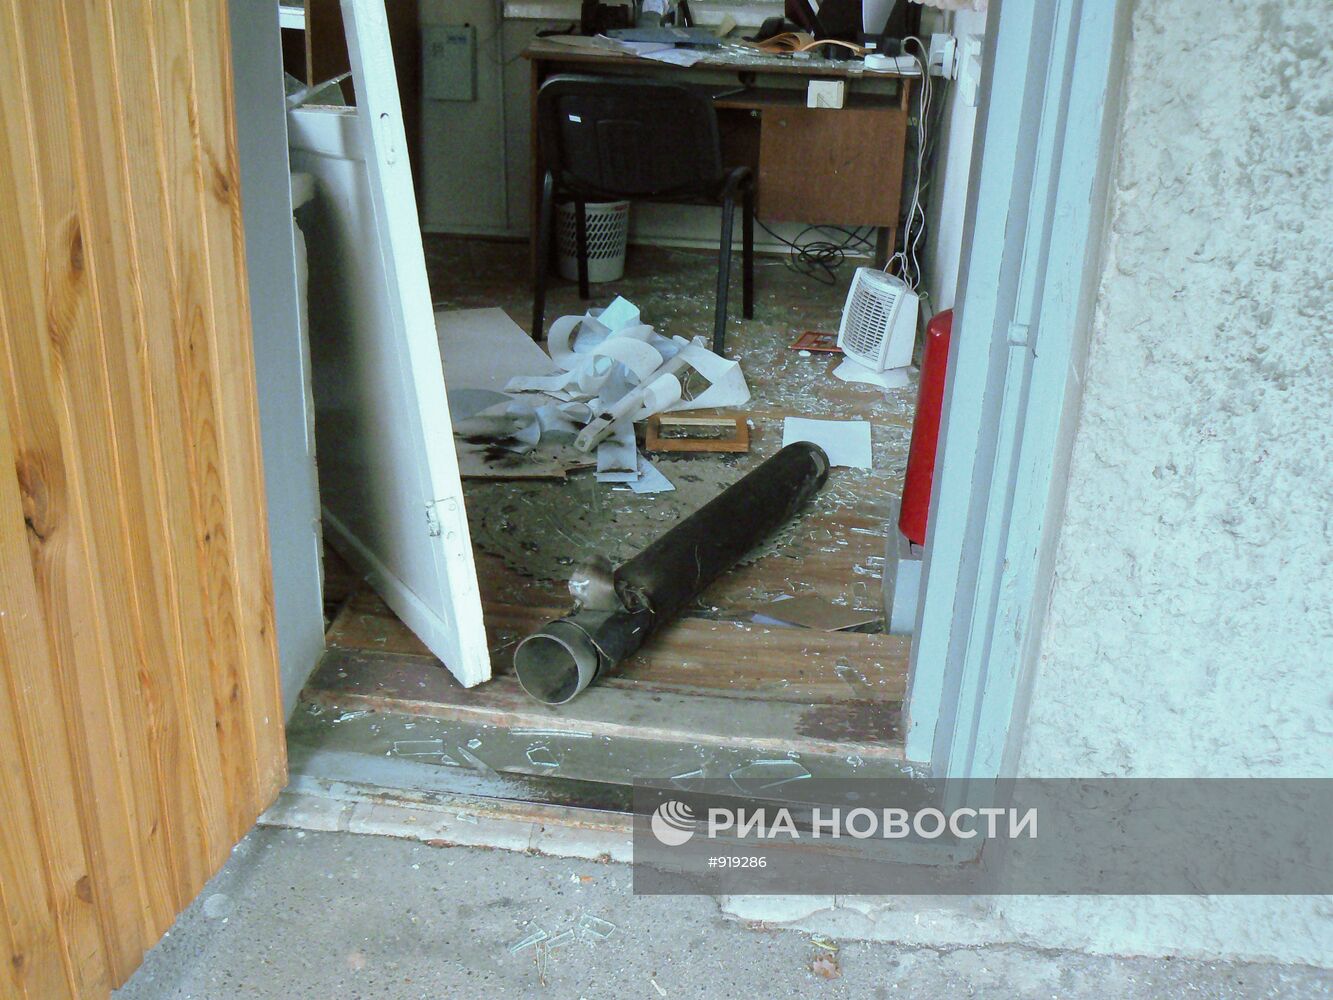 Гильза от снаряда в помещении одного из зданий в поселке Пугачев